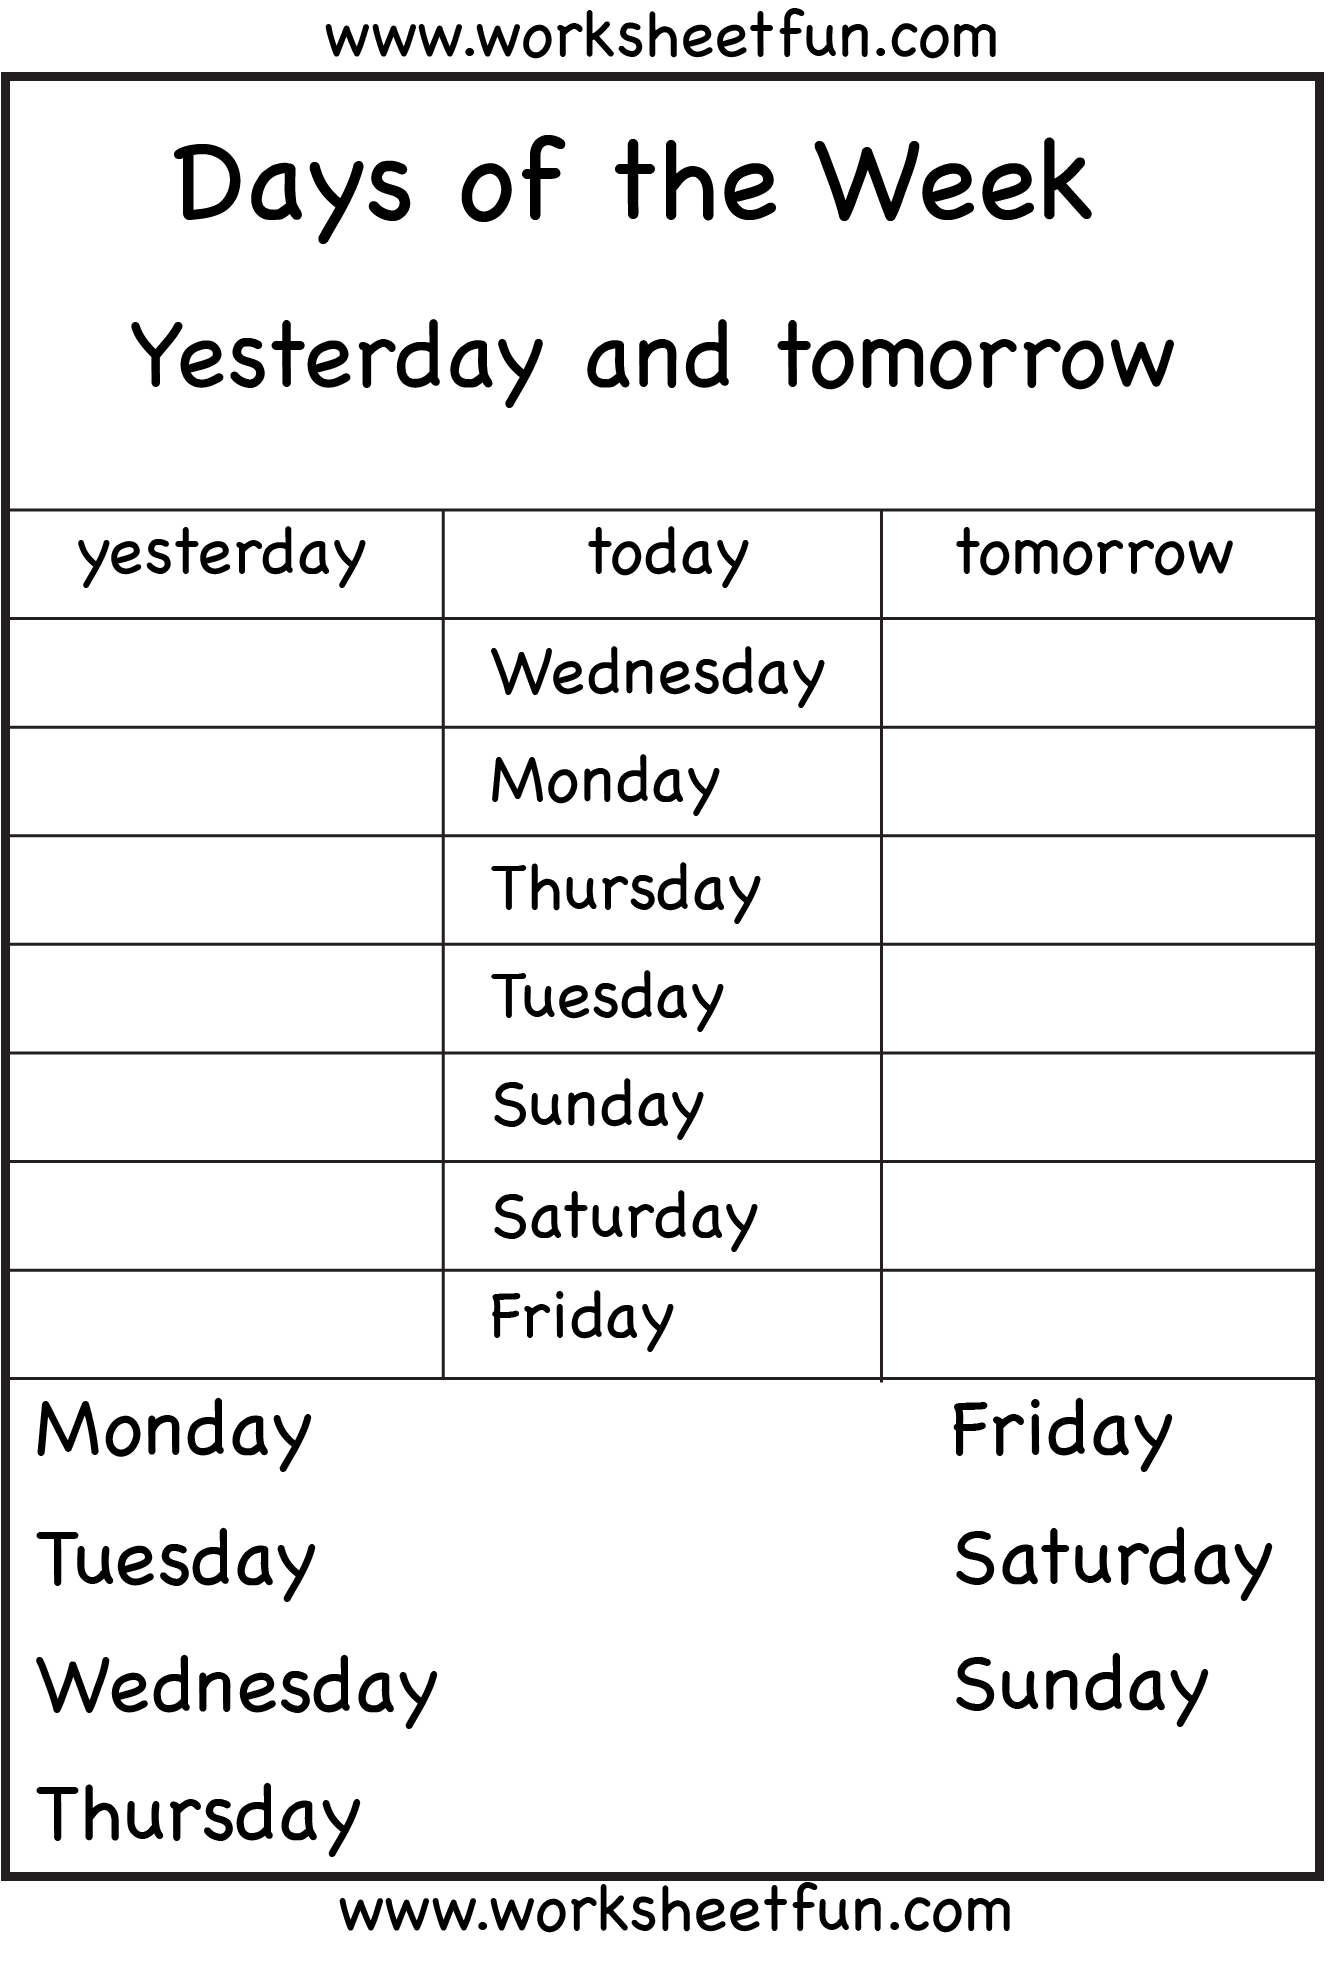 days-of-the-week-worksheets-1-eval